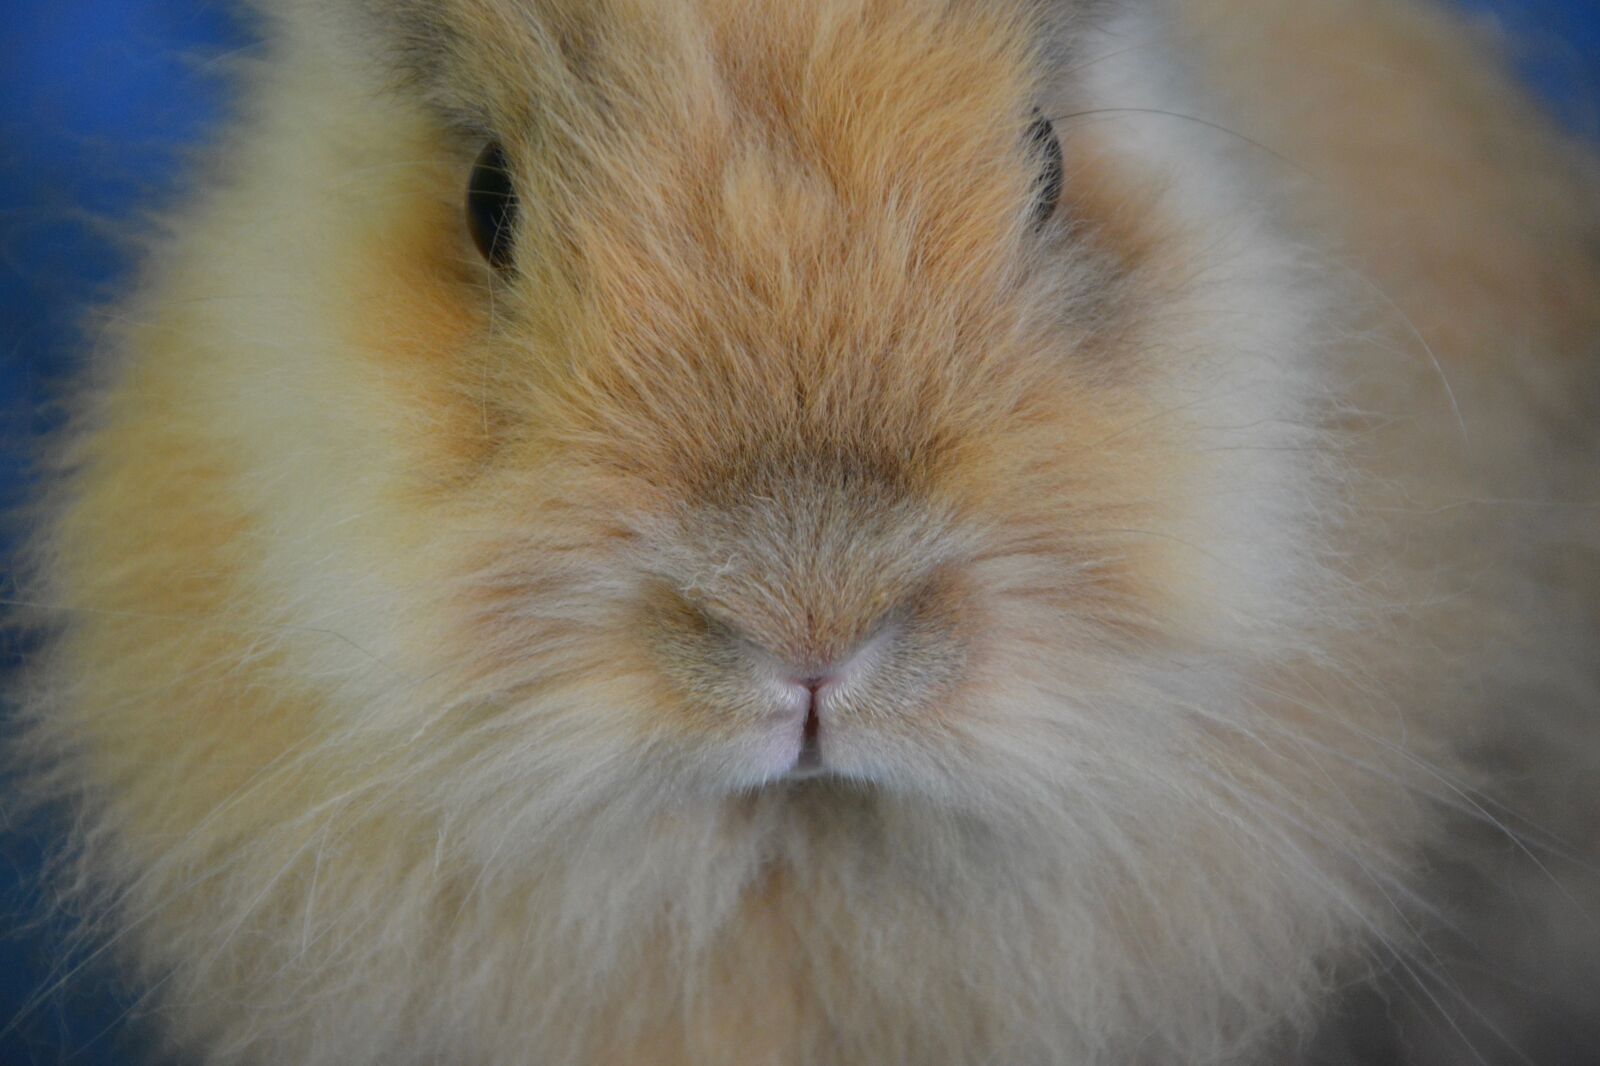 Nikon D5200 sample photo. Rabbit, nose, face photography